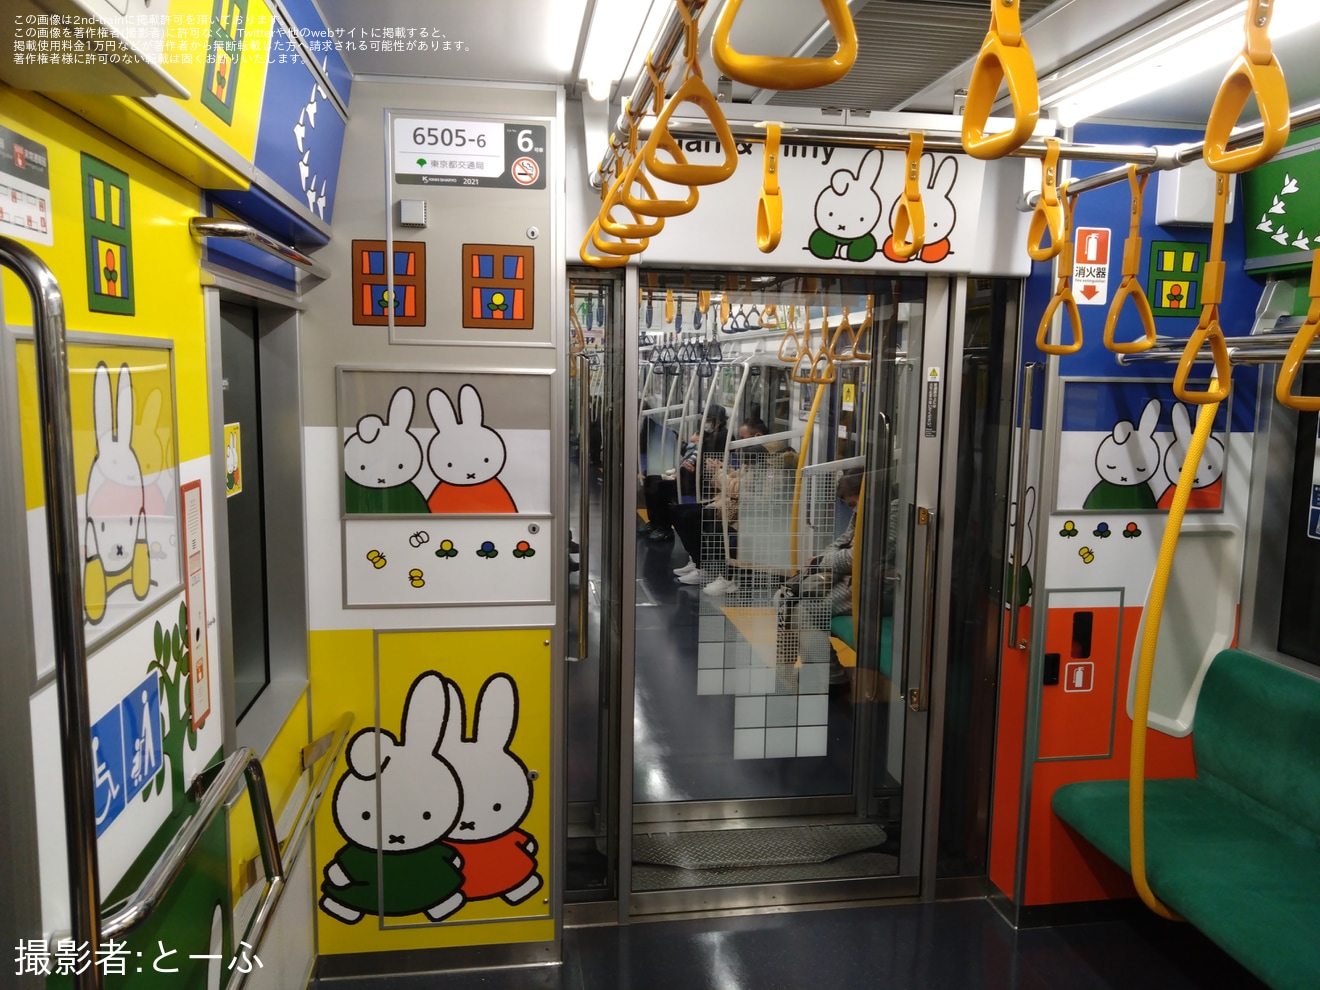 【都営】都営三田線で子育て応援スペースが開始されるの拡大写真